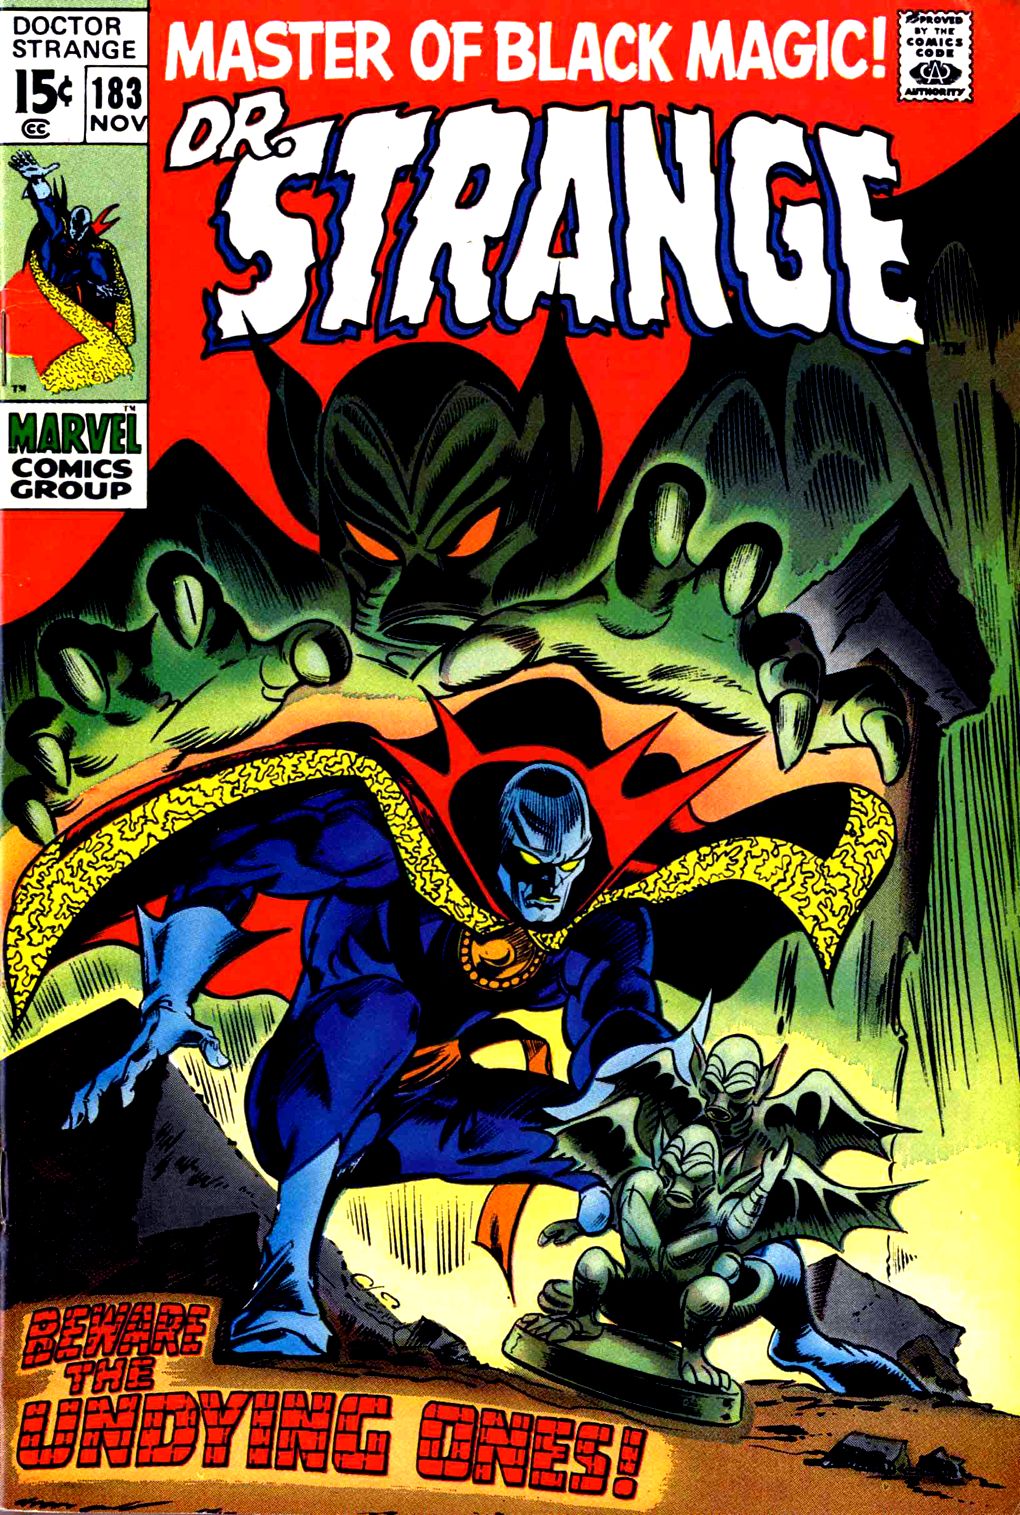 Read online Marvel Masterworks: Doctor Strange comic -  Issue # TPB 3 - 296